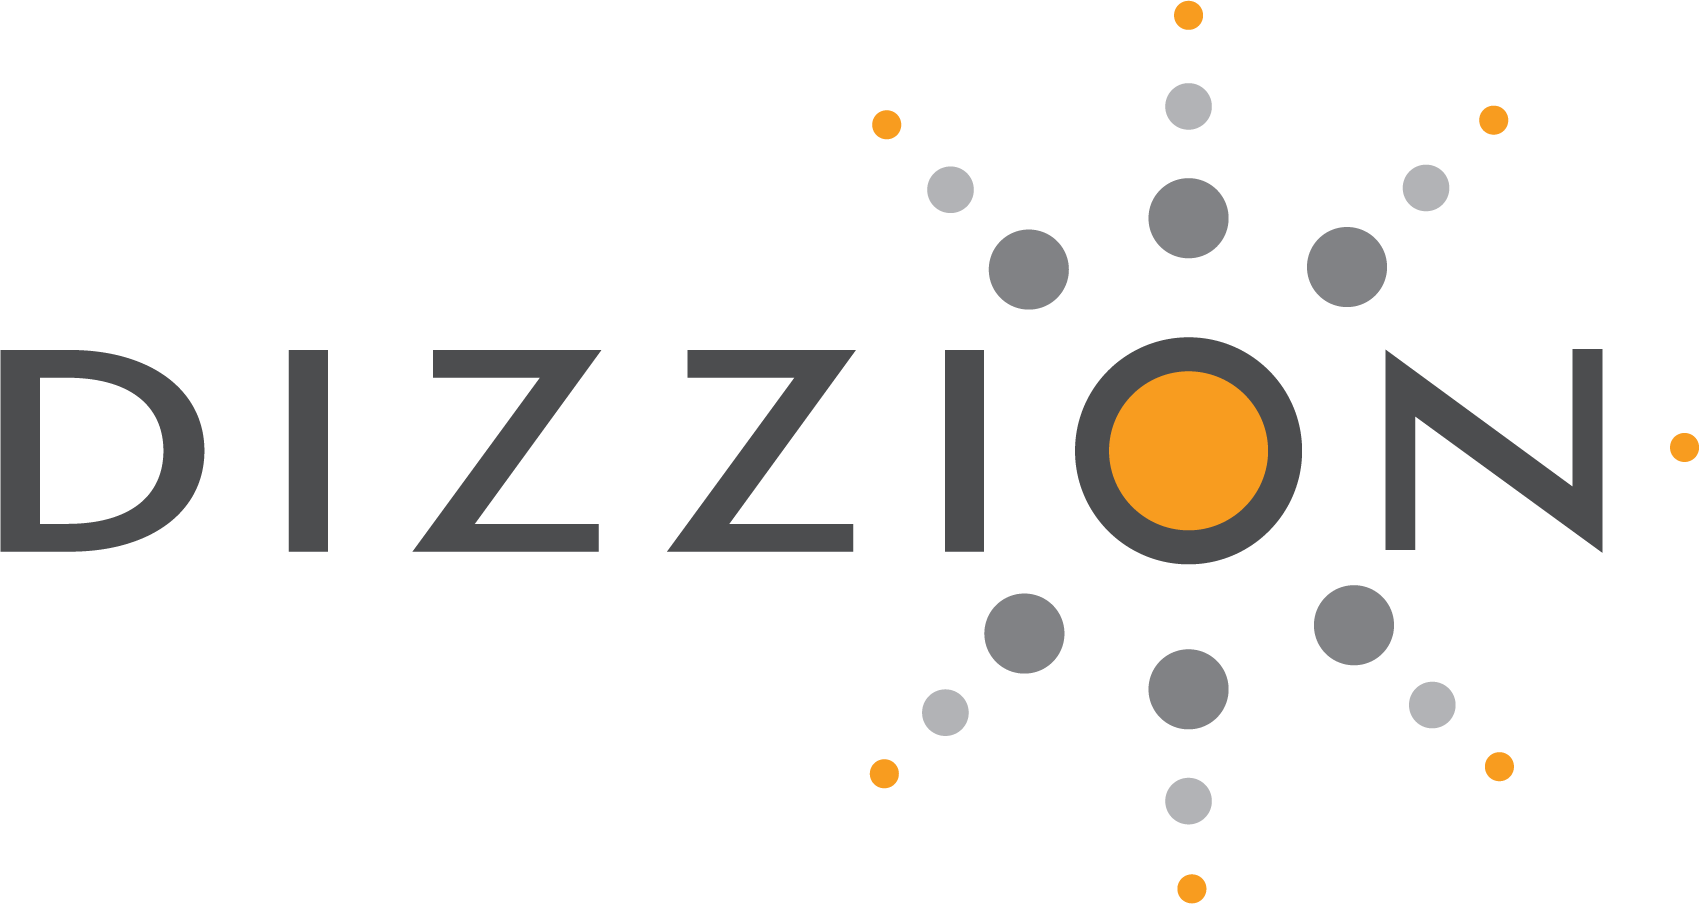 Dizzion logo